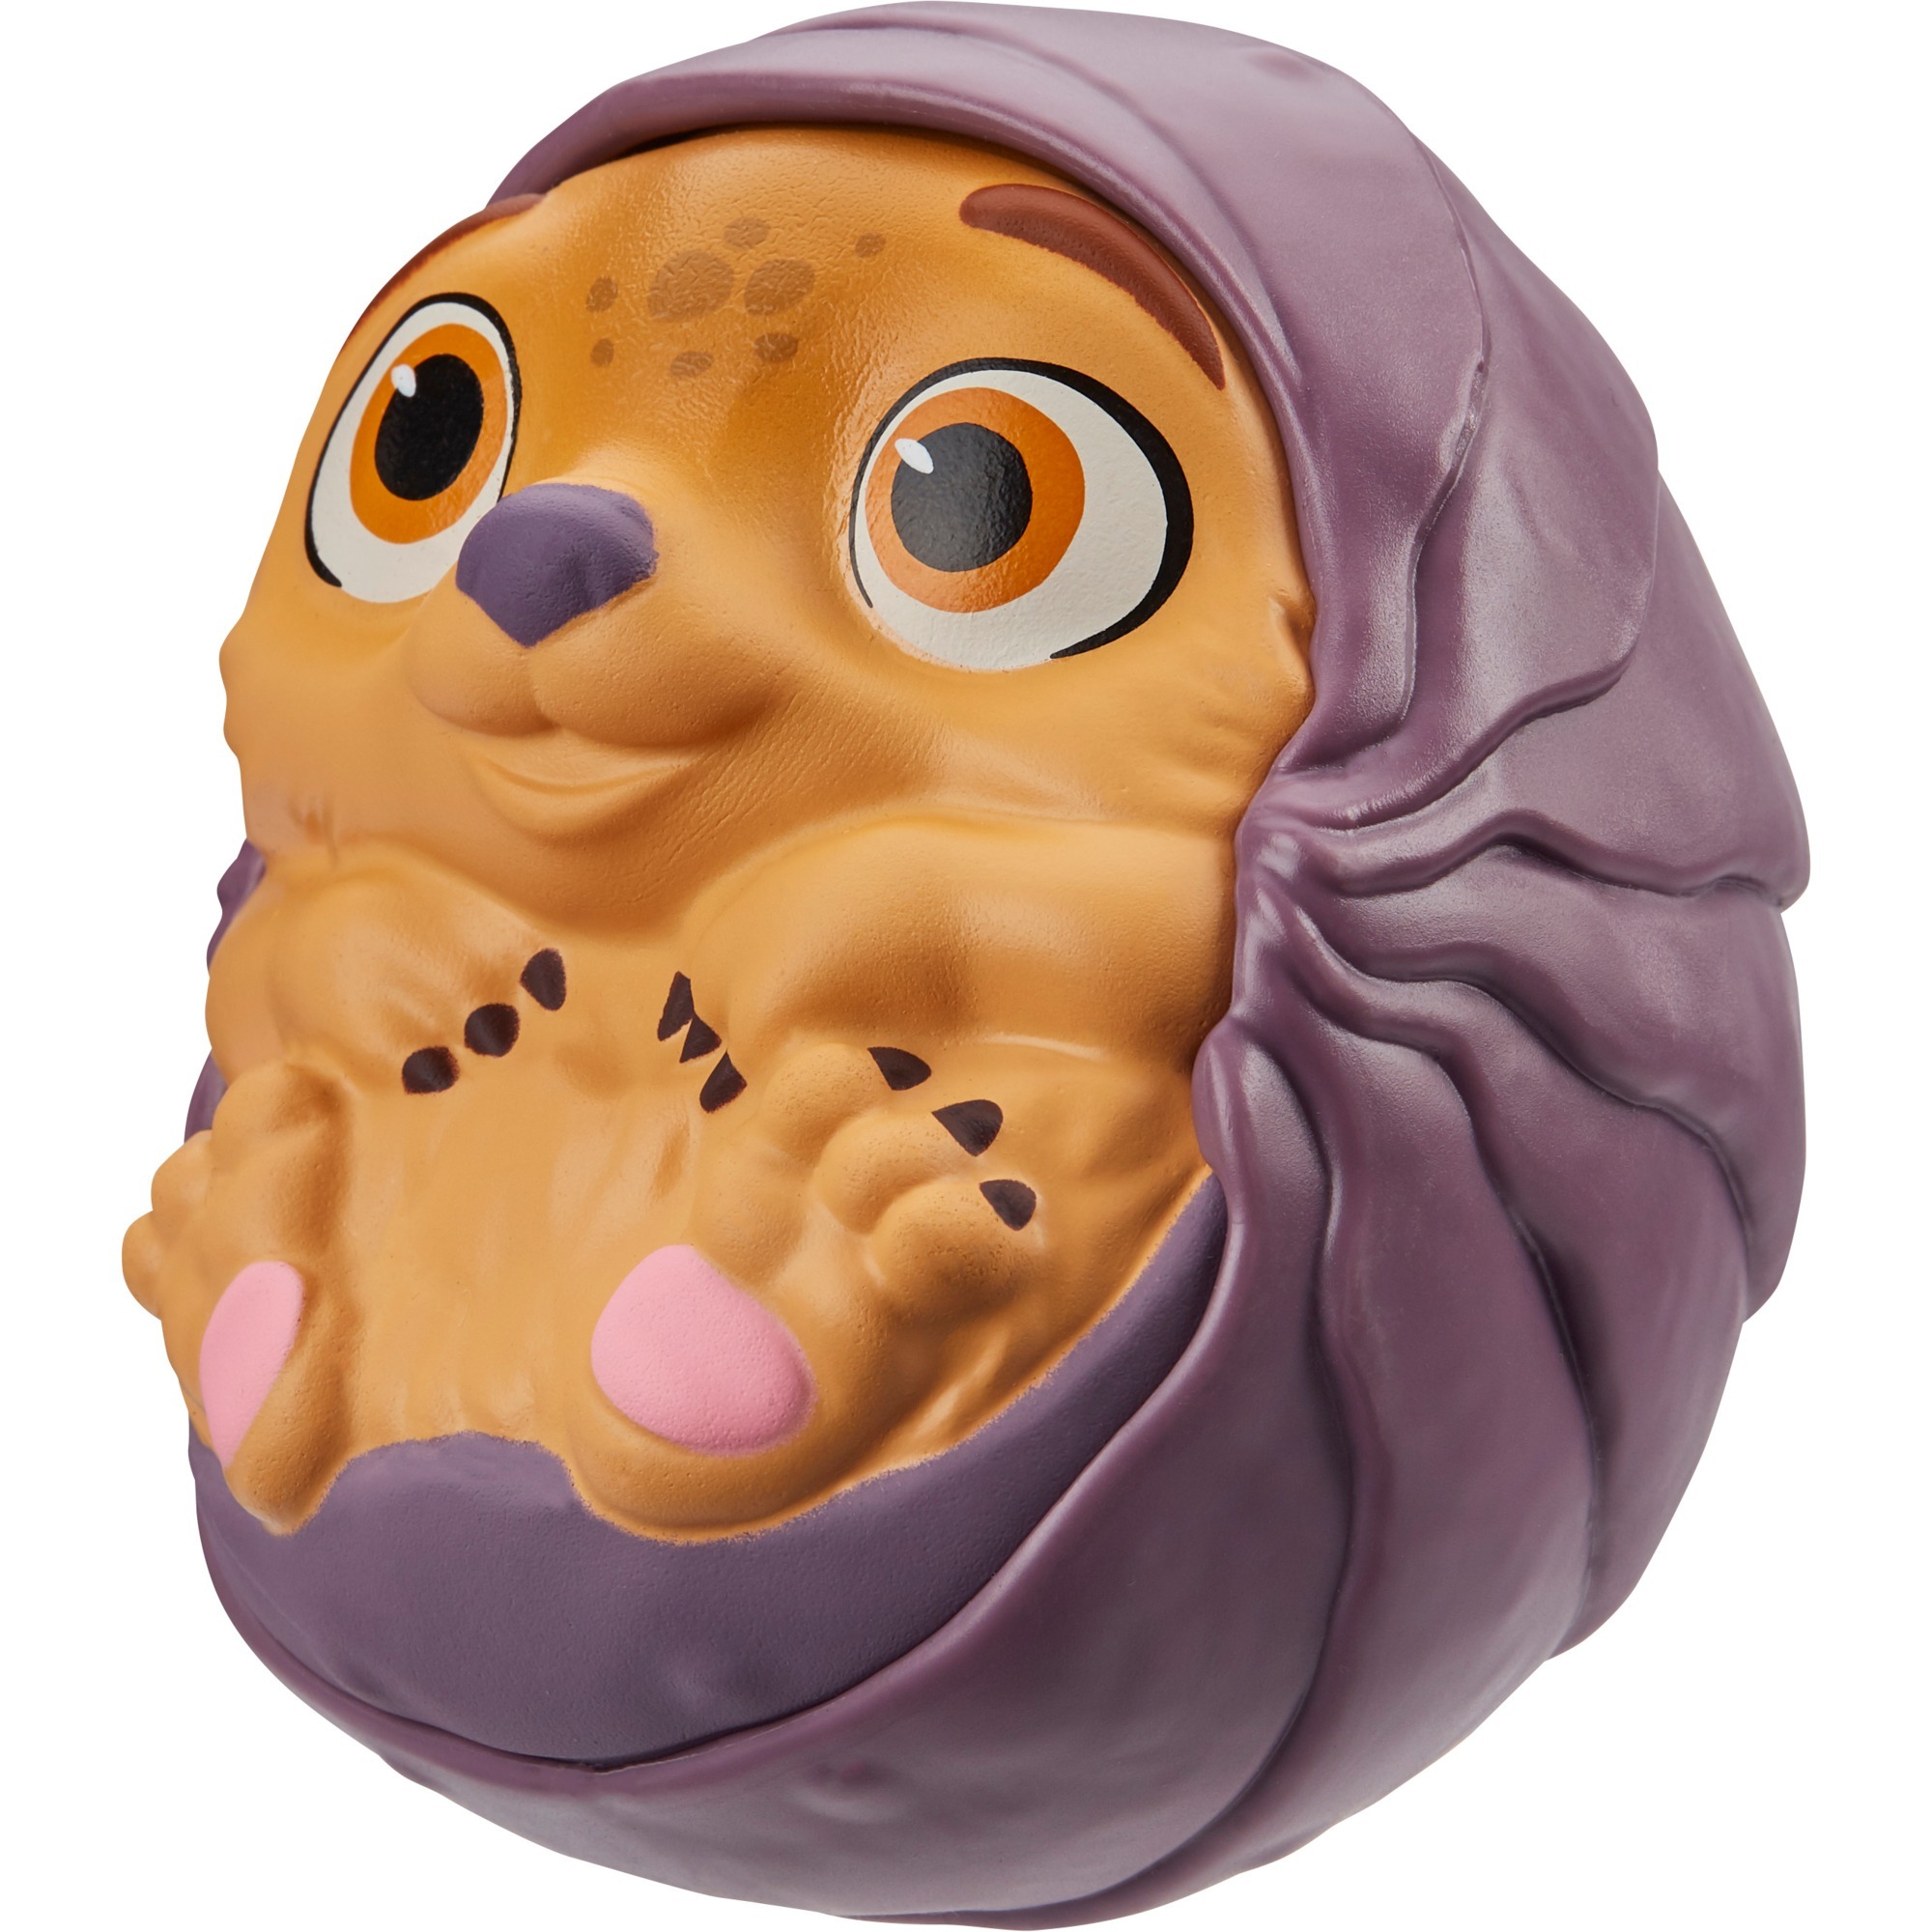 Image of Alternate - Disney Raya und der letzte Drache: Baby Tuk Tuk, Spielfigur online einkaufen bei Alternate